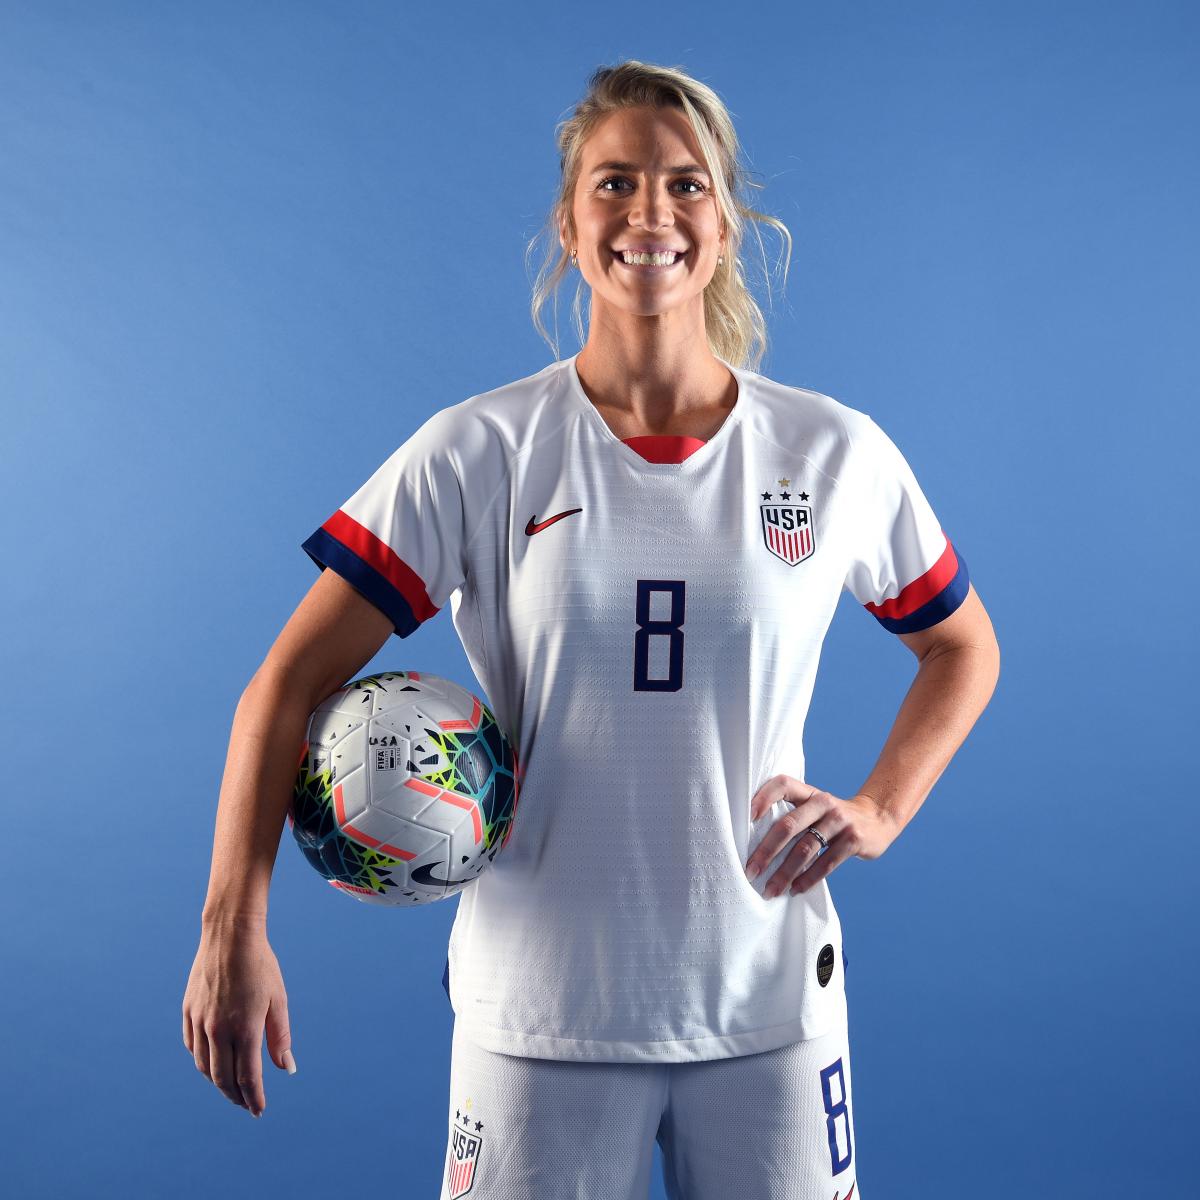 Julie Ertz Wins USA Soccer's 2019 Female Athlete of the Year over Megan